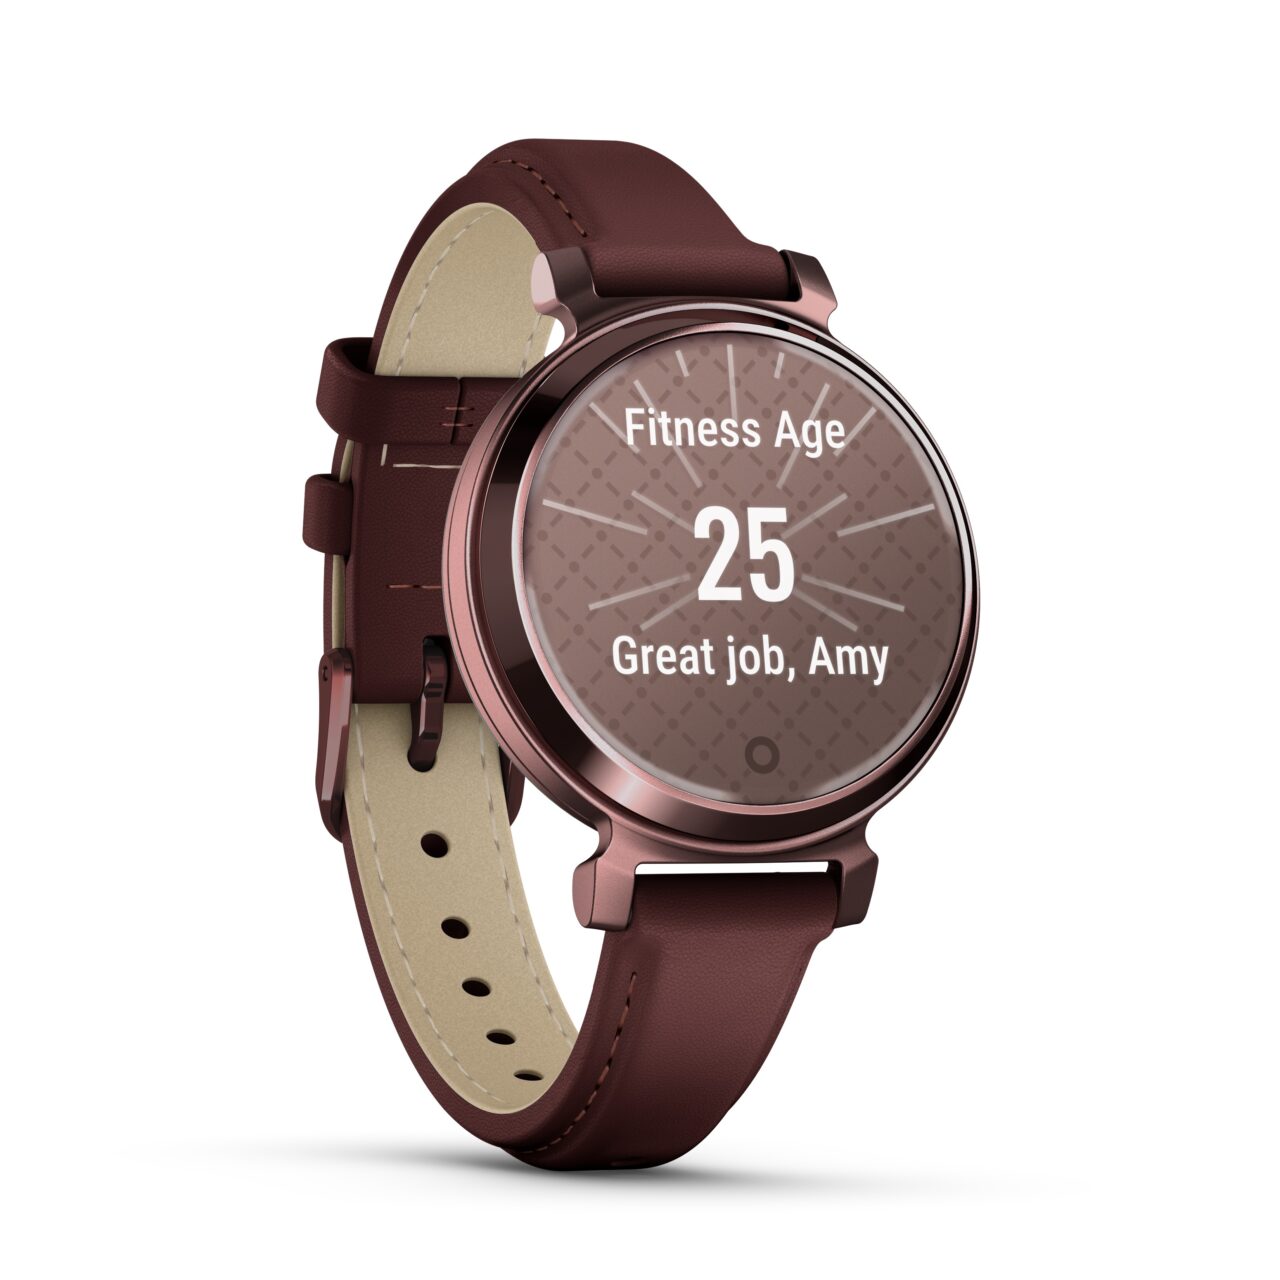 Inteligentny zegarek z brązowym paskiem wyświetlający wiek fitness, który wynosi 25 lat, oraz gratulacje dla użytkownika o imieniu Amy.